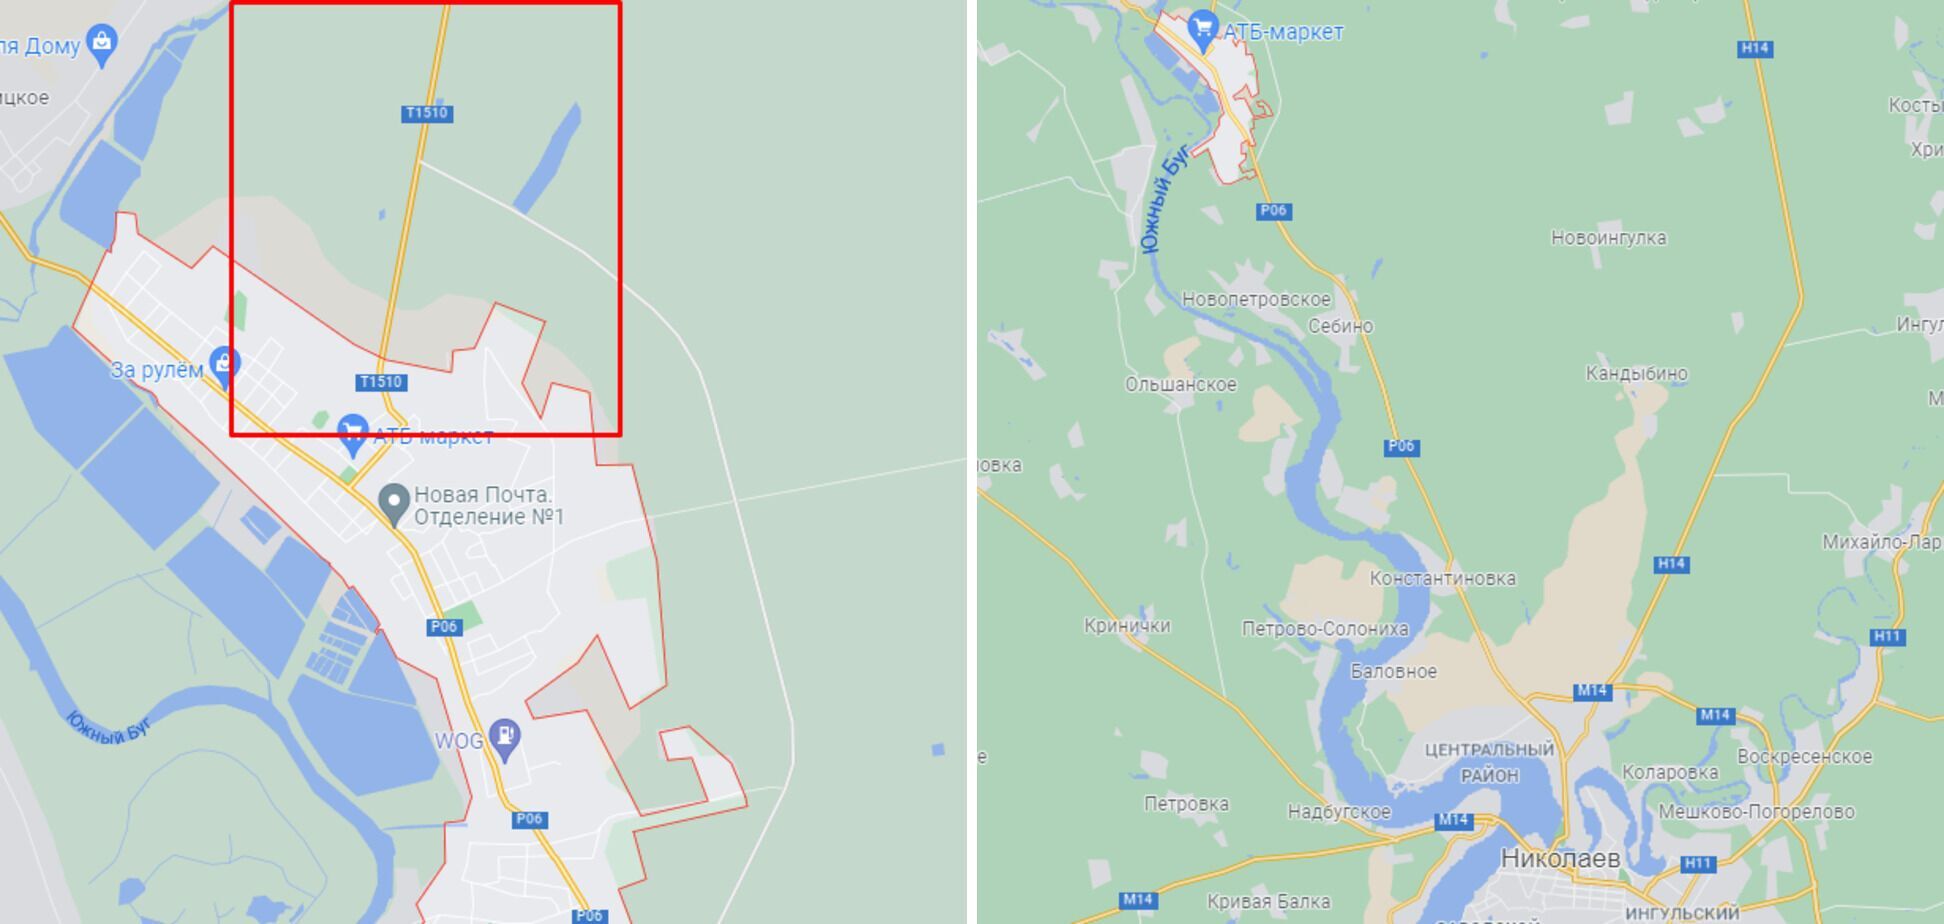 ДТП произошло под Новой Одессой, что недалеко от Николаева.